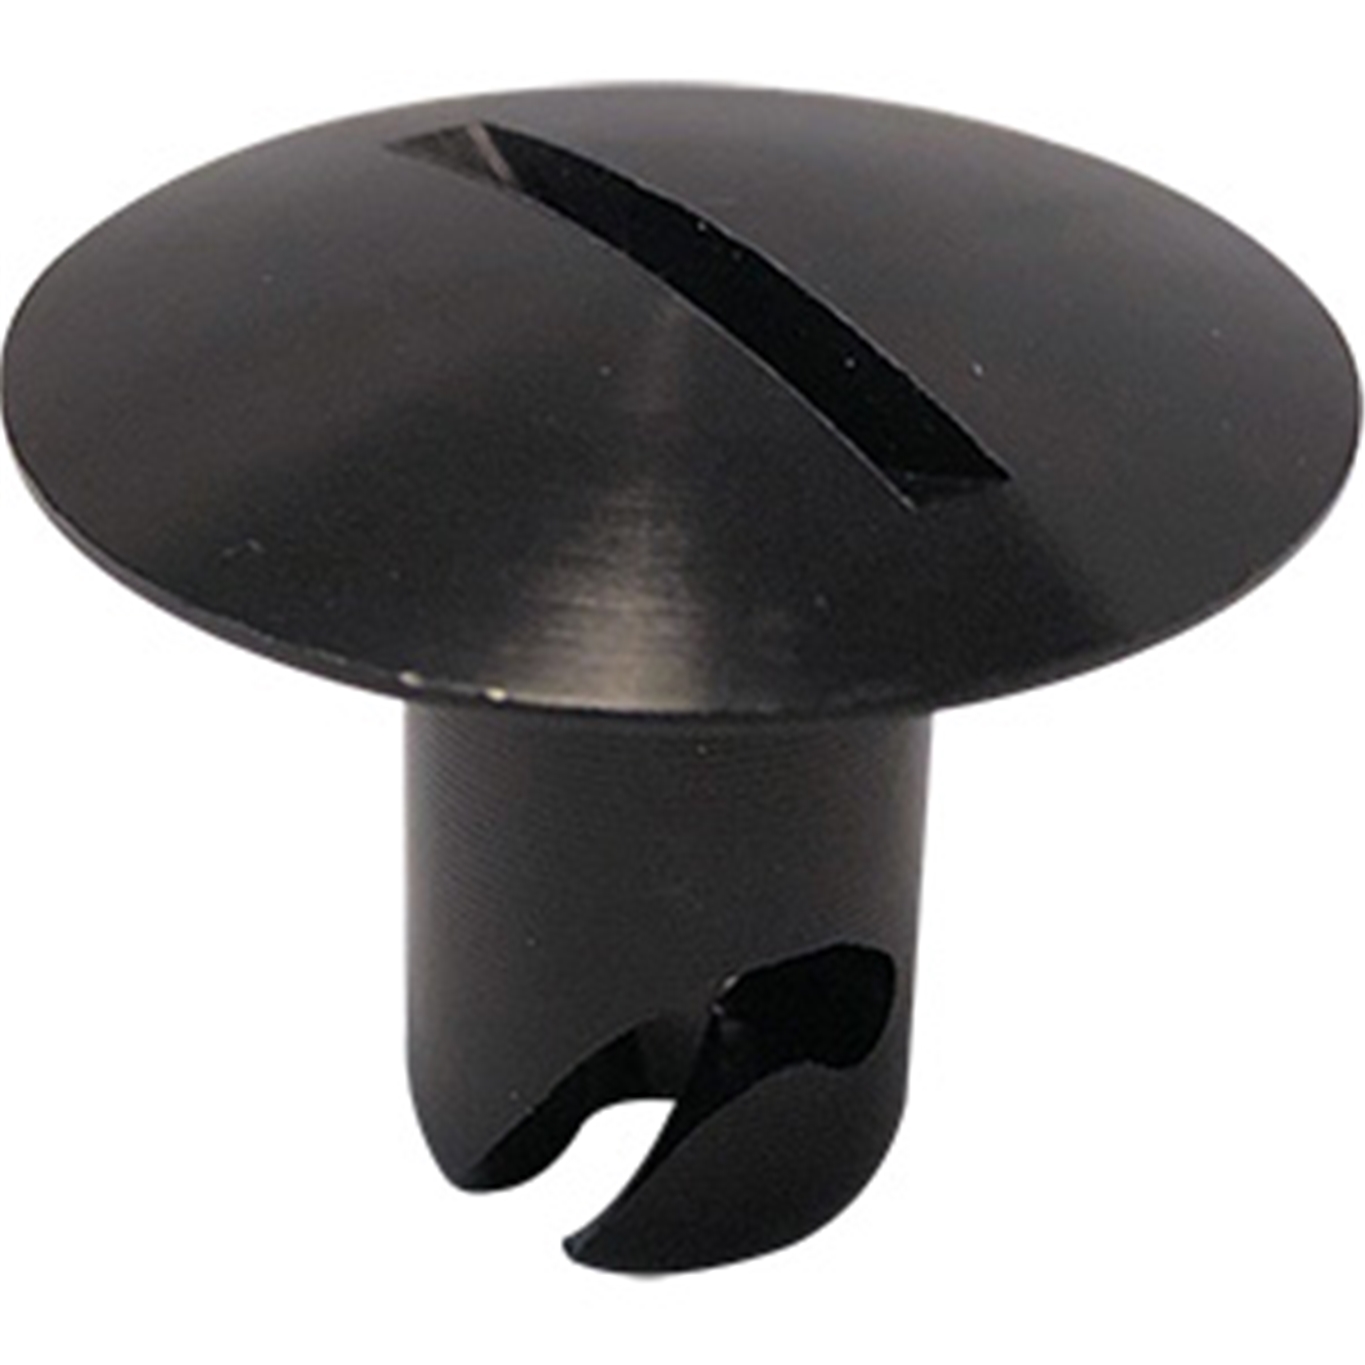 Panelfast Black Big Oval Head Steel 7/16".600 Grip